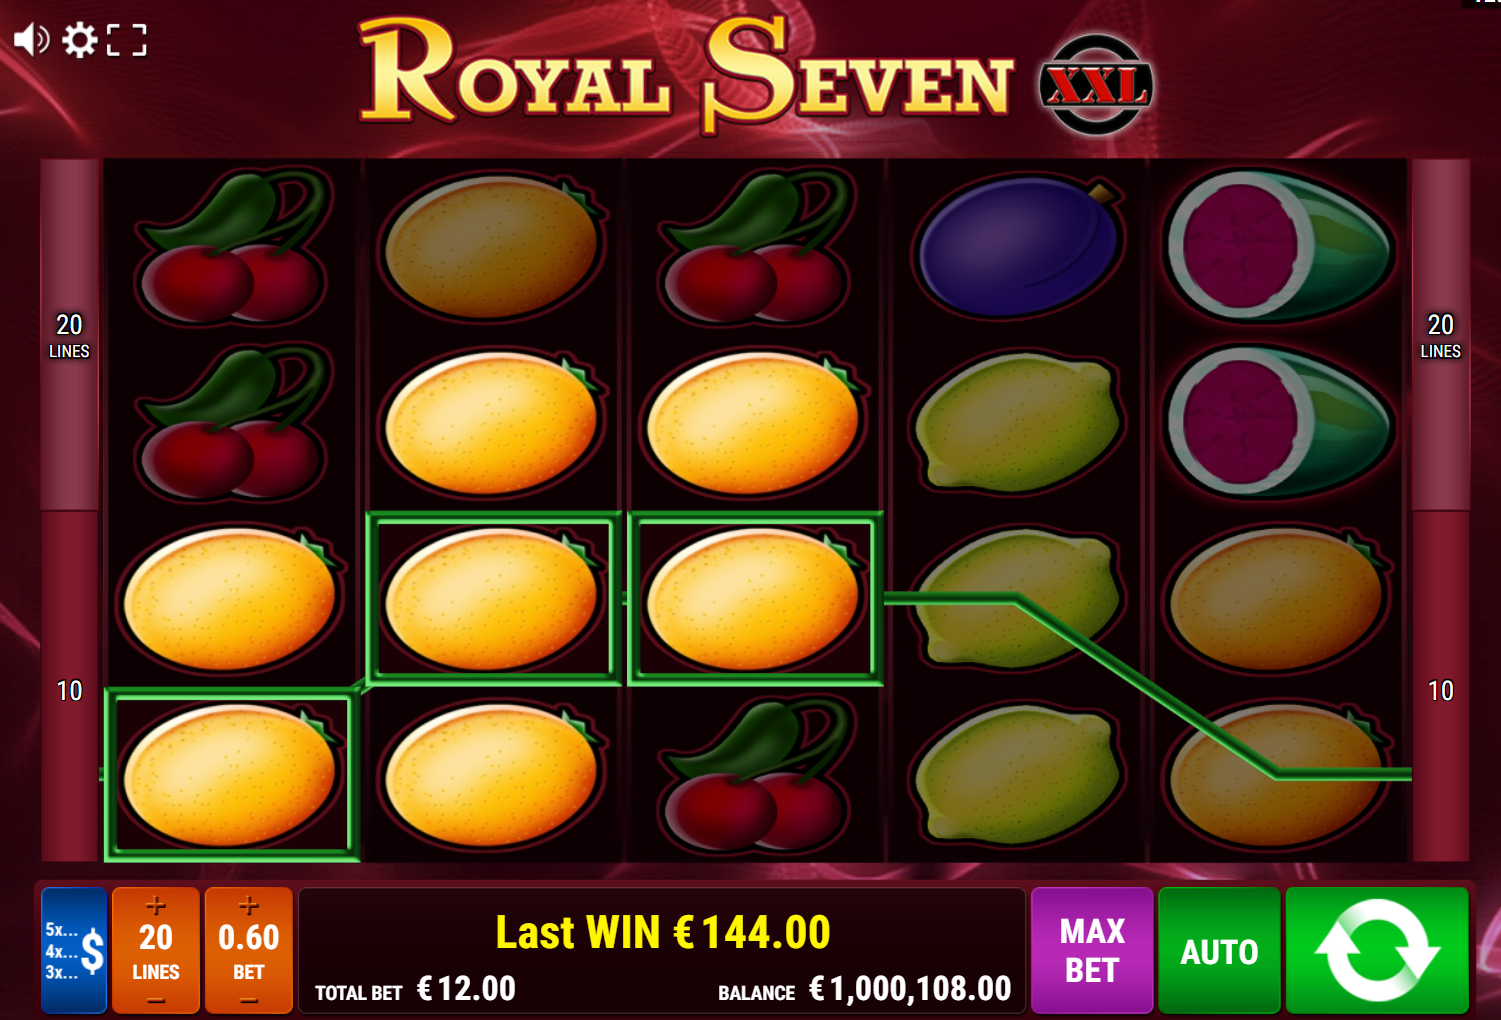 Royal Seven XXL Slot Big Win